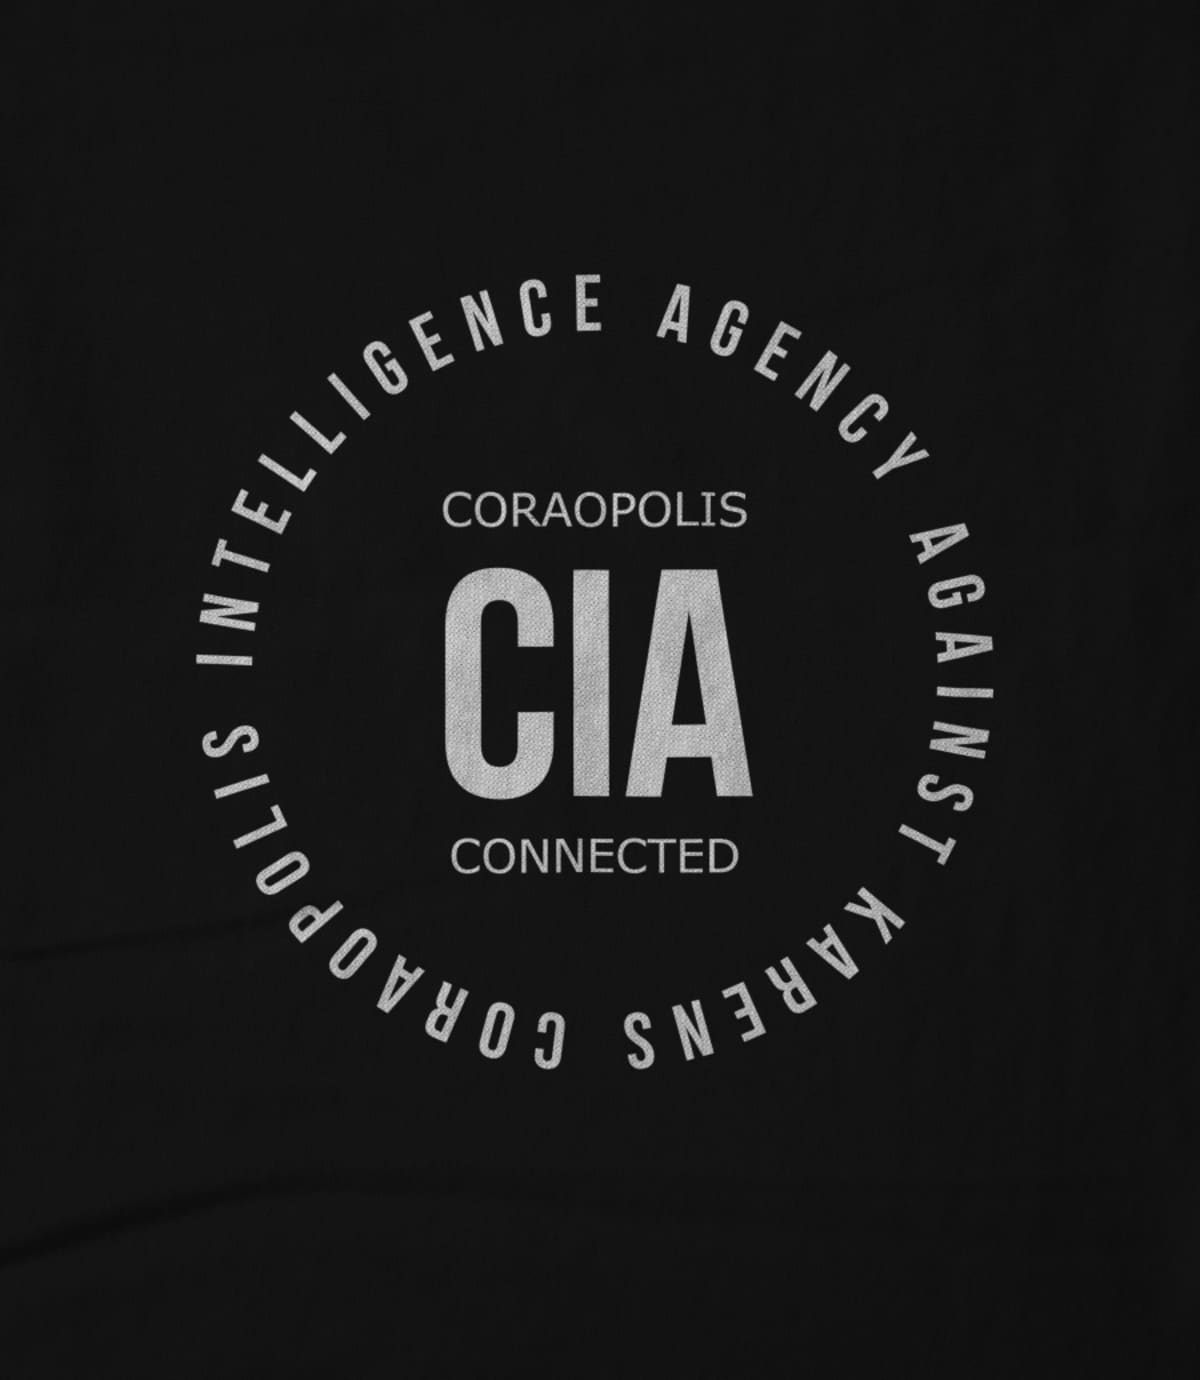 Coraopolis connected coraopolis intelligence agency against karens 1627492470